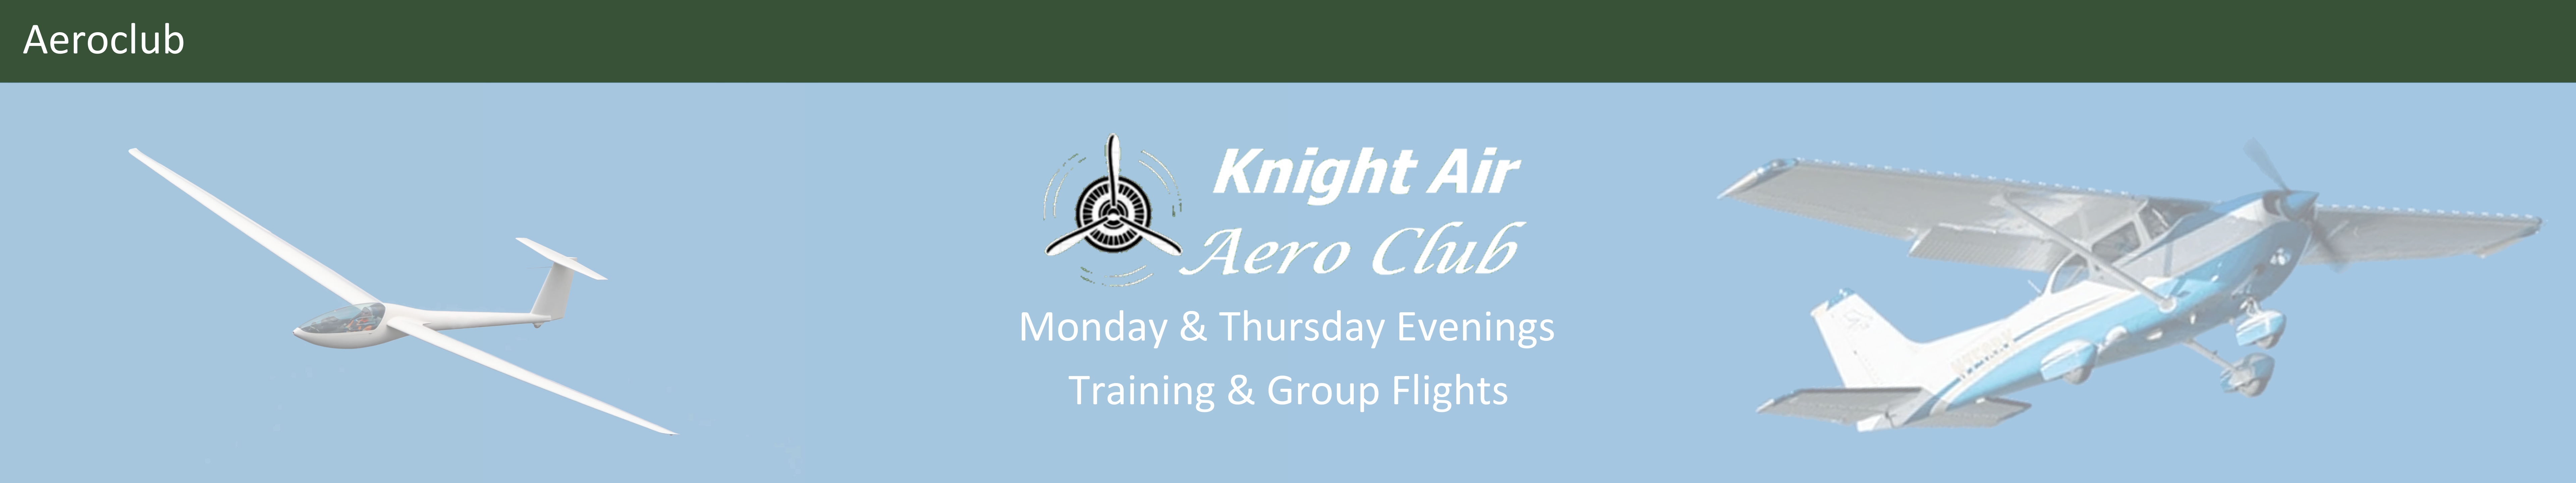 Aeroclub Events Monday & Thursday